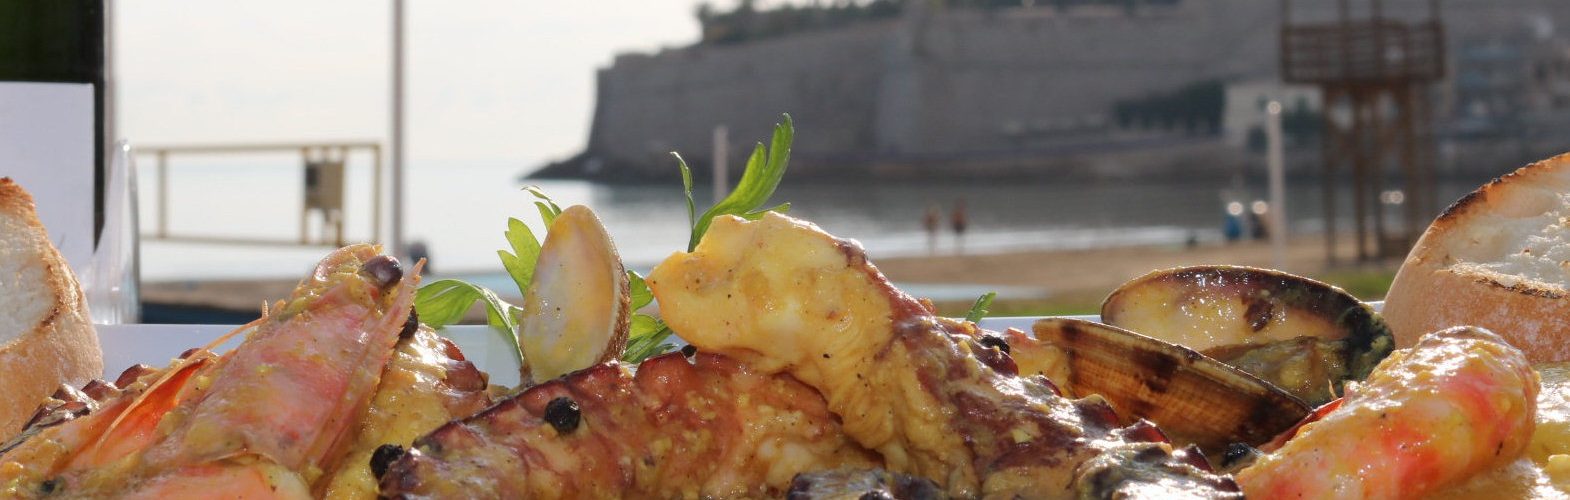 La gastronomía es ya motivación del viaje para 1 de cada 3 turistas que llegan a Peñíscola